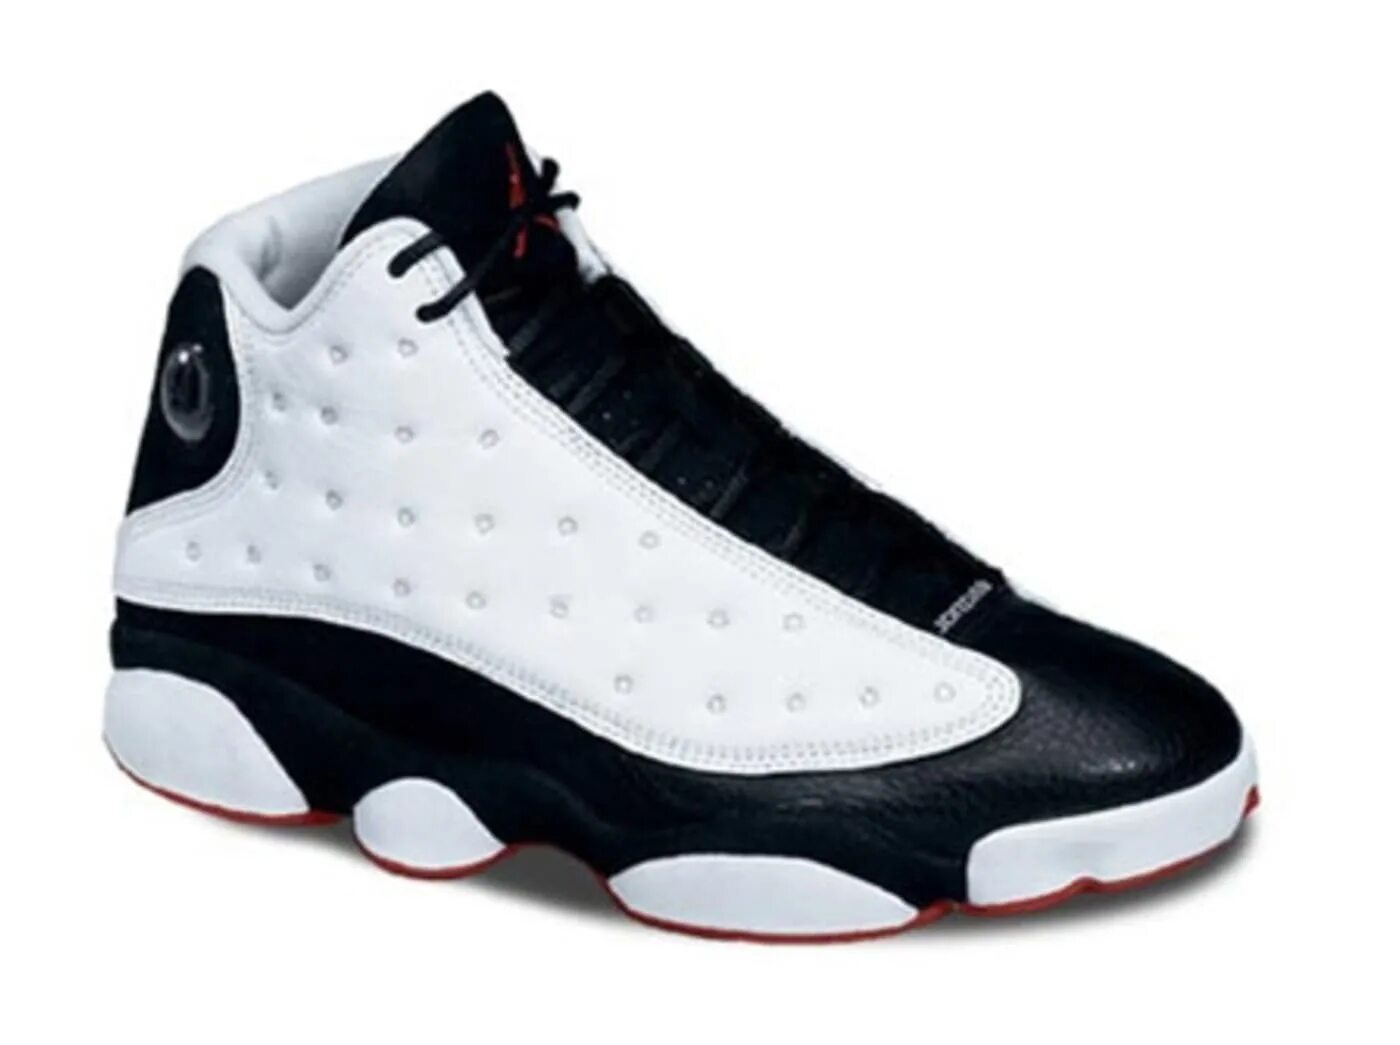 Nike Jordan Shoes. Nike Basketball Shoes 90s. Найк и Jordan 13 детские. Nike Jordan 90s. Купить кроссовки в оренбурге